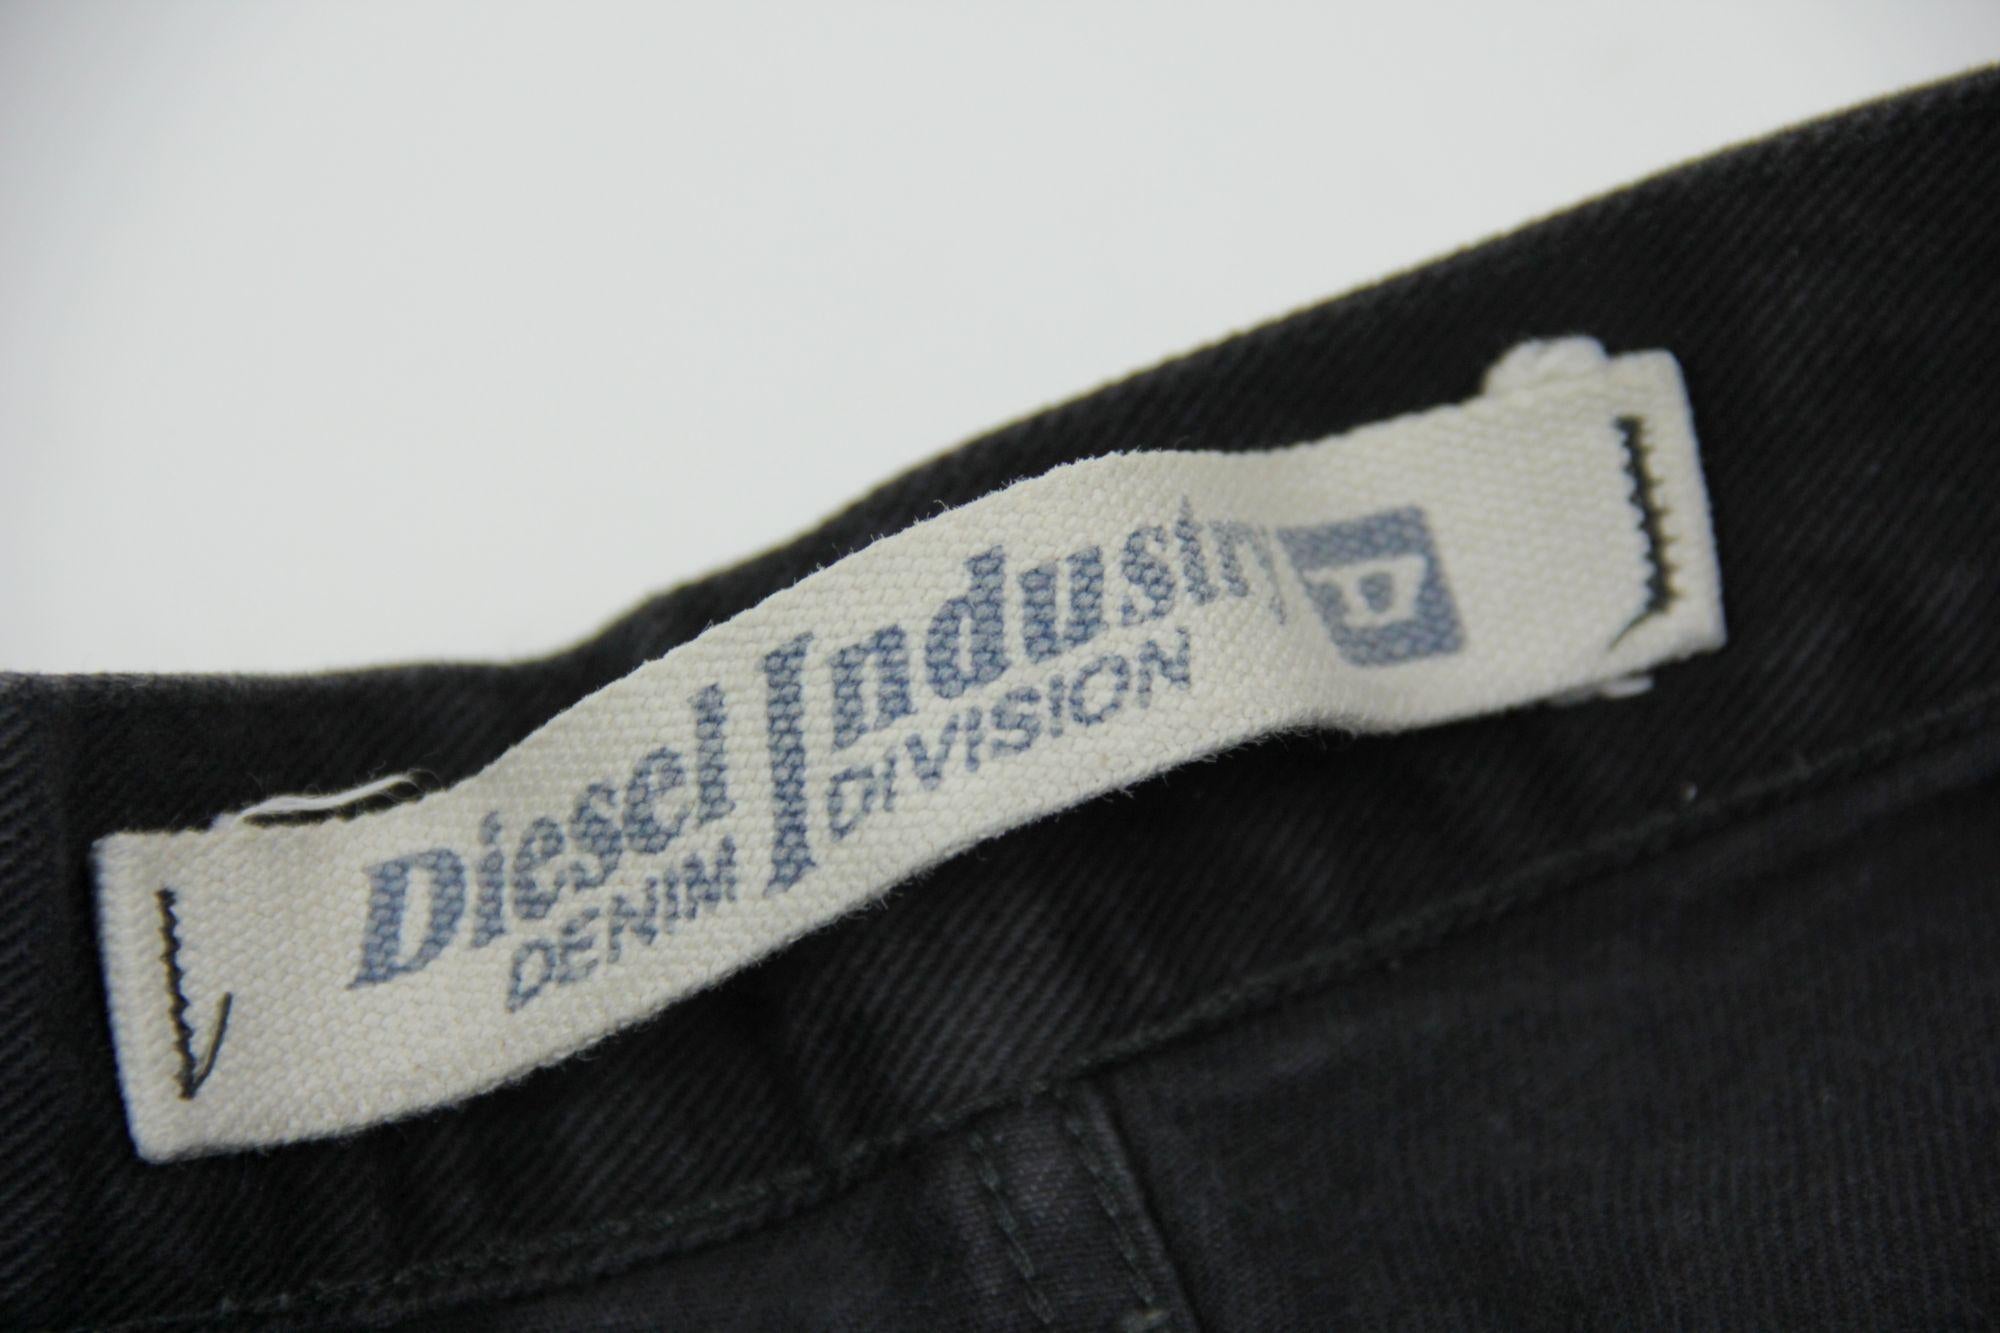 Vintage Diesel Industry Men’s Black Jeans W33/L34